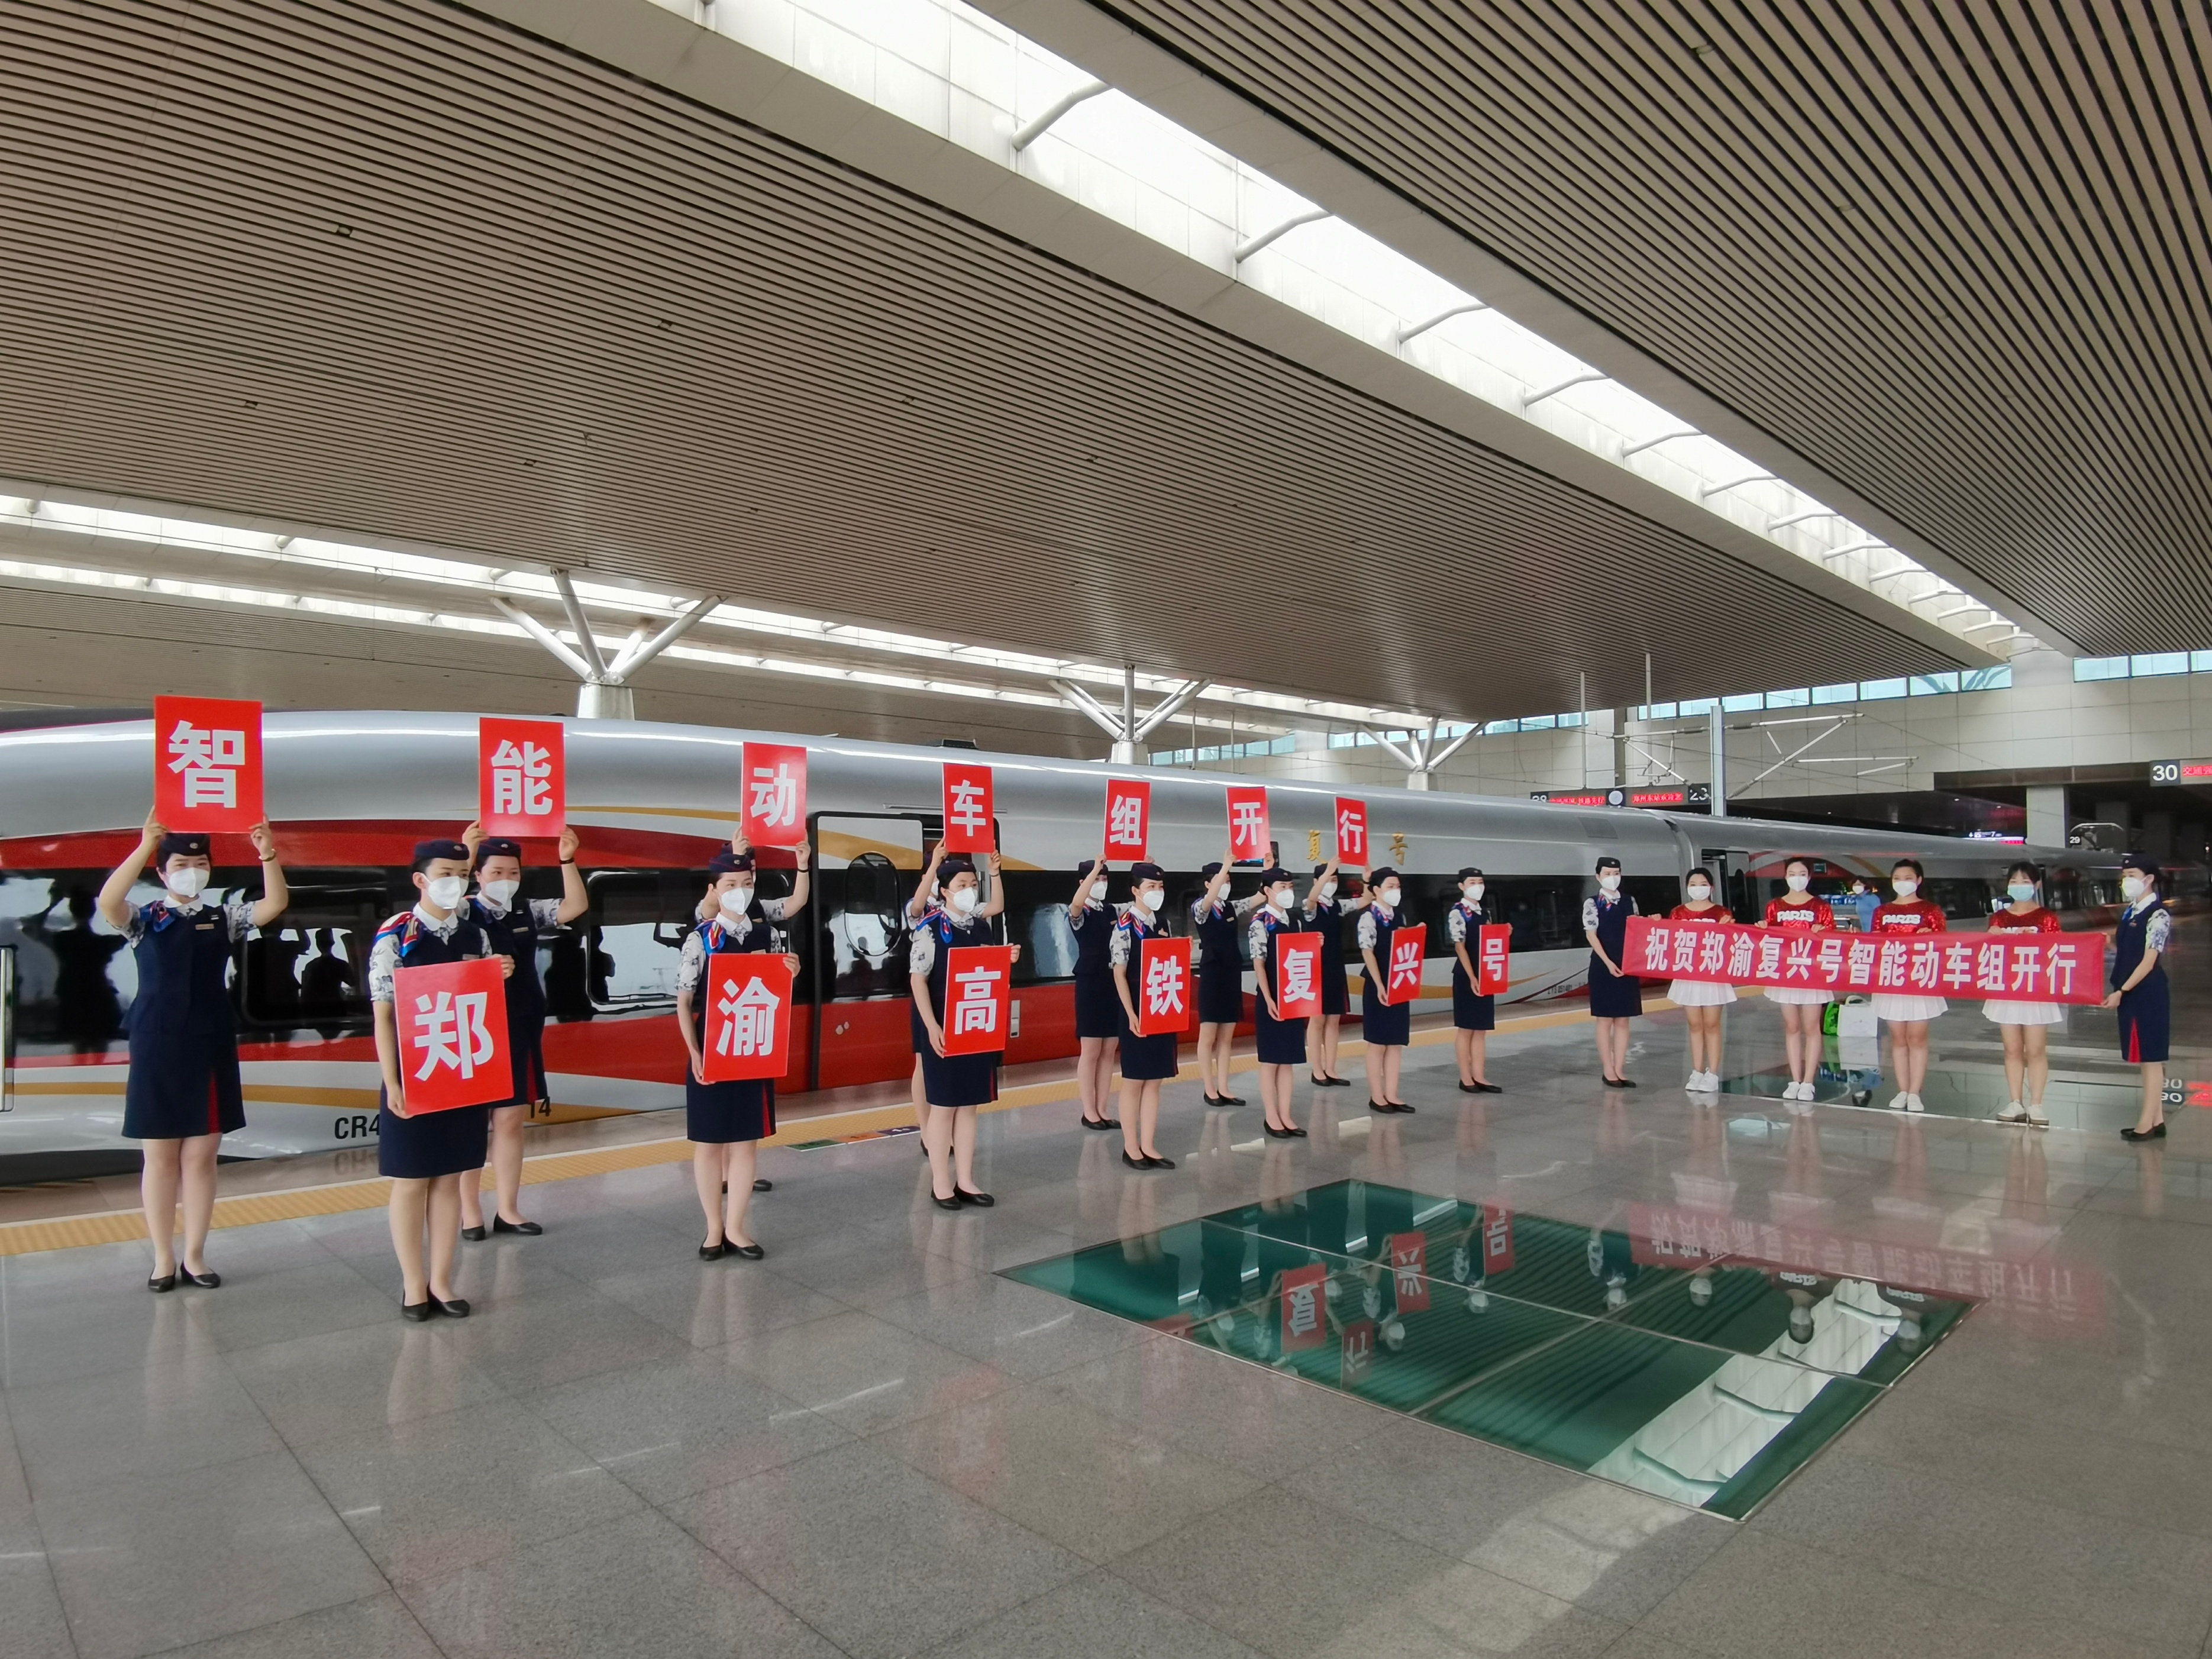 郑州铁路新添智能高铁让旅客体验智能旅途